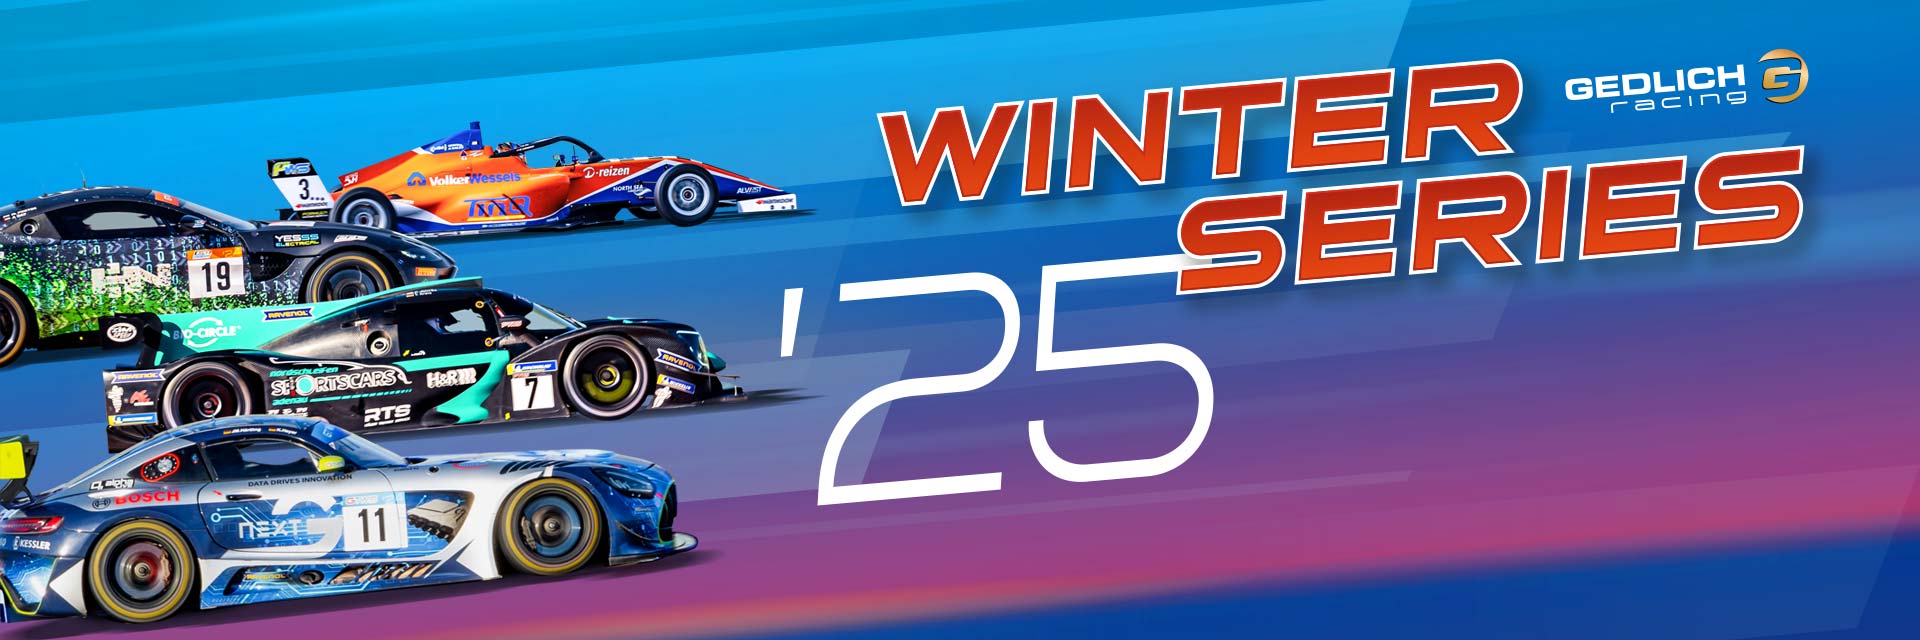 Winter Series 2025 by GEDLICH Racing